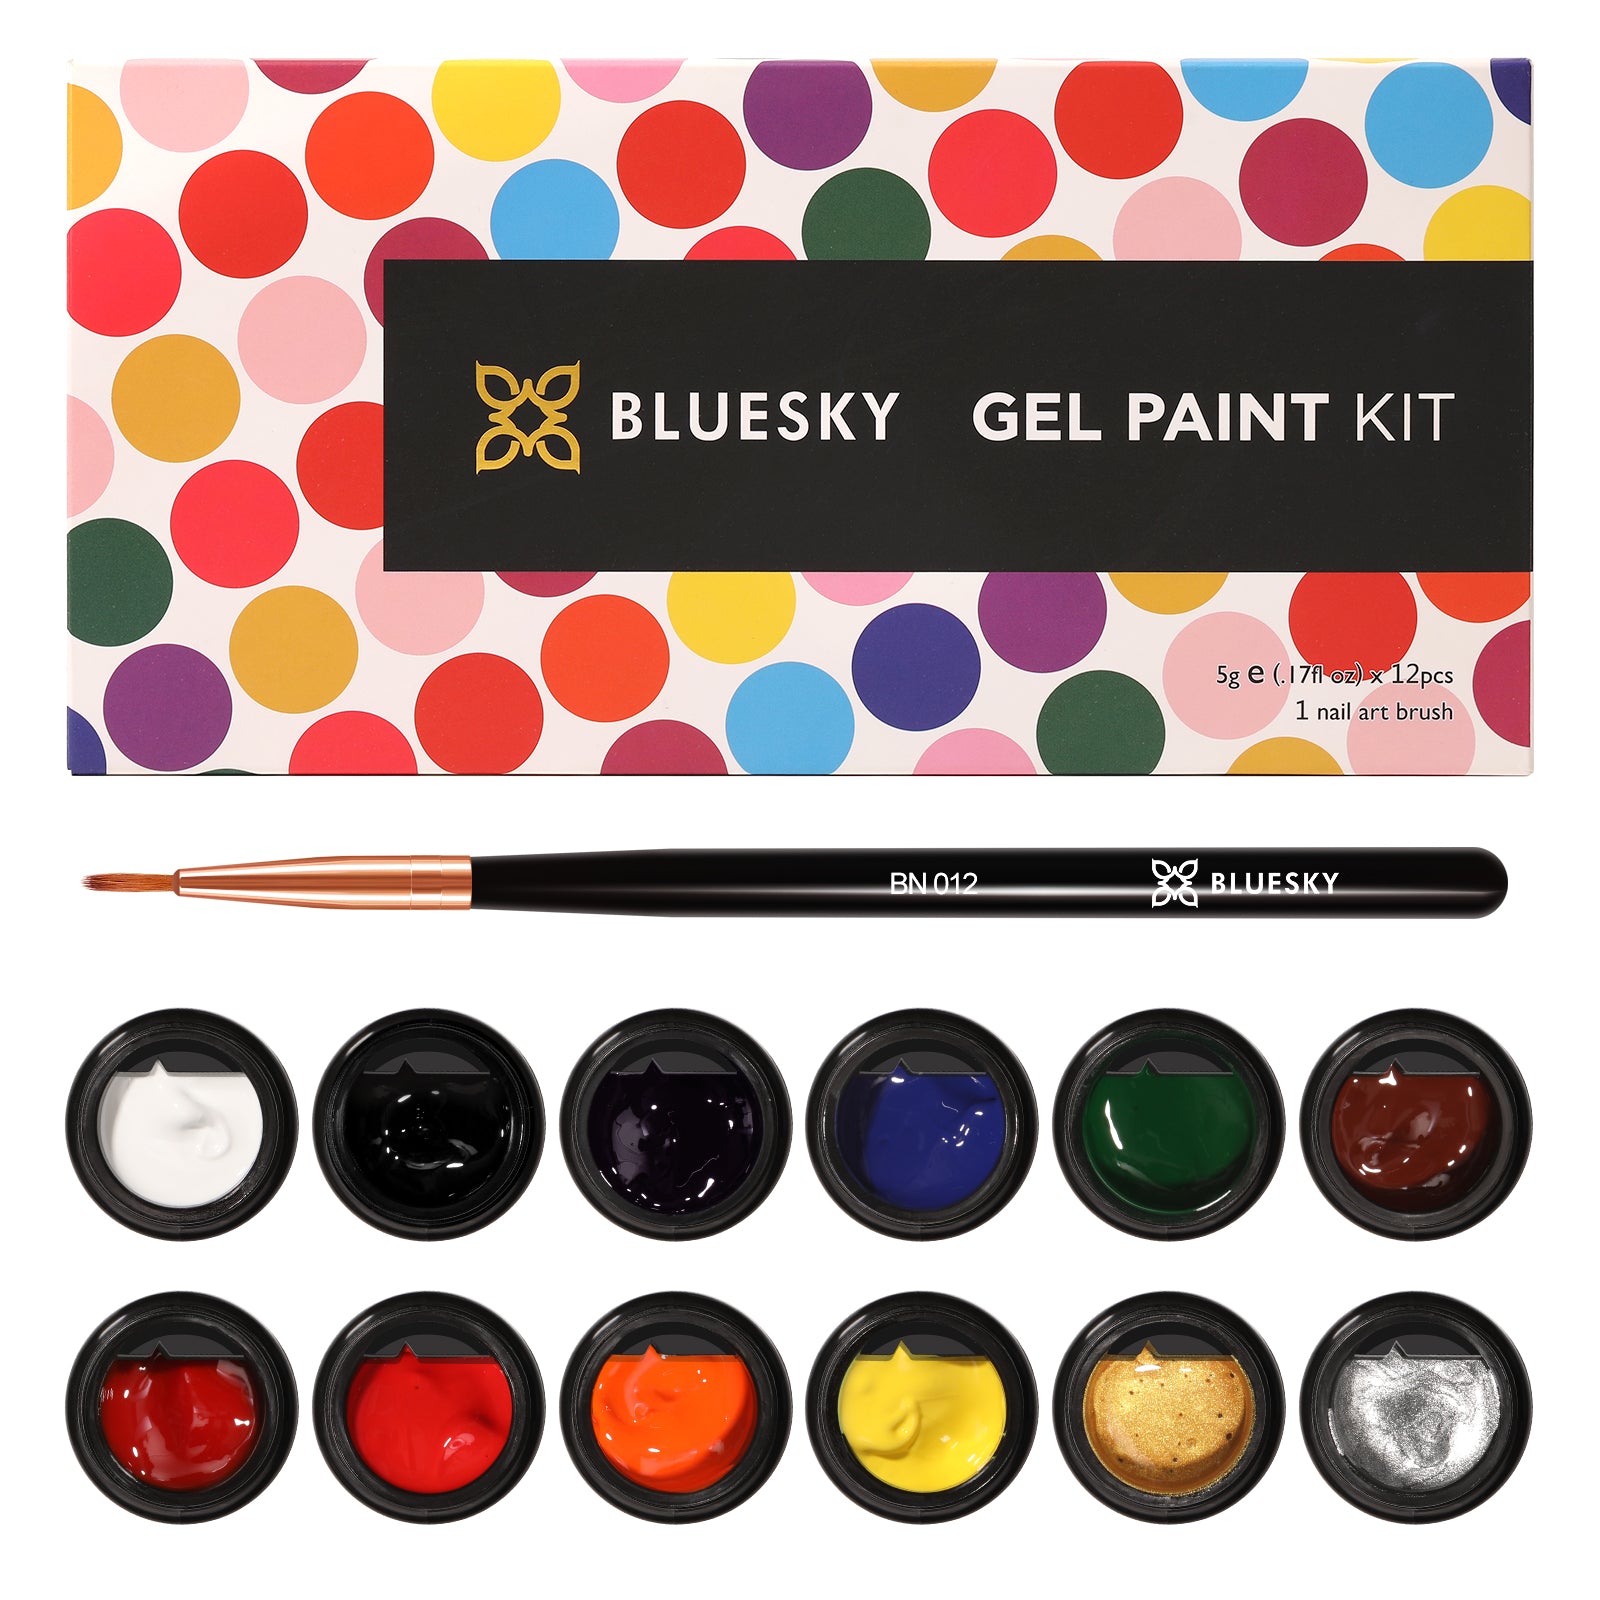 Bluesky Gel Paint Kit - BLUESKY